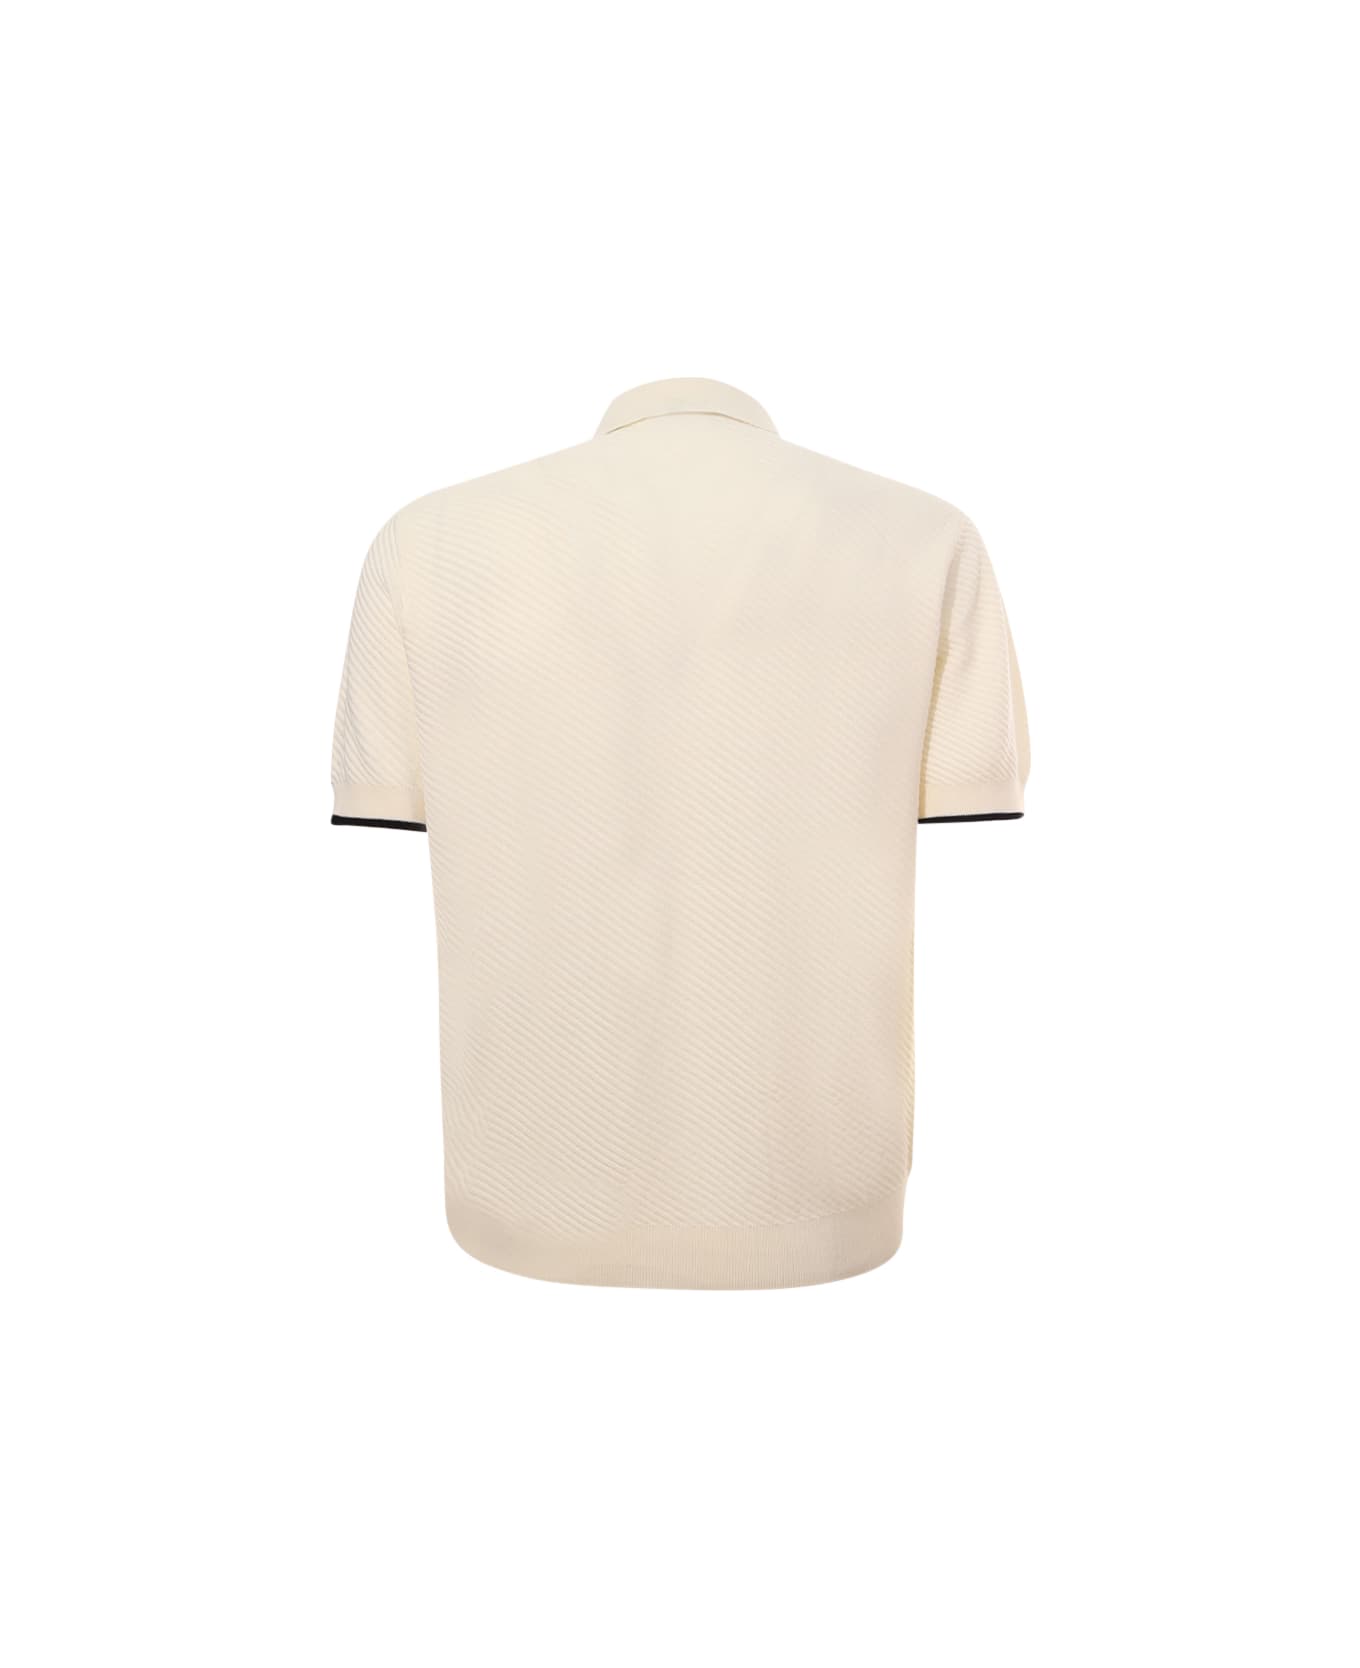 Emporio Armani Polo Shirt - Cream